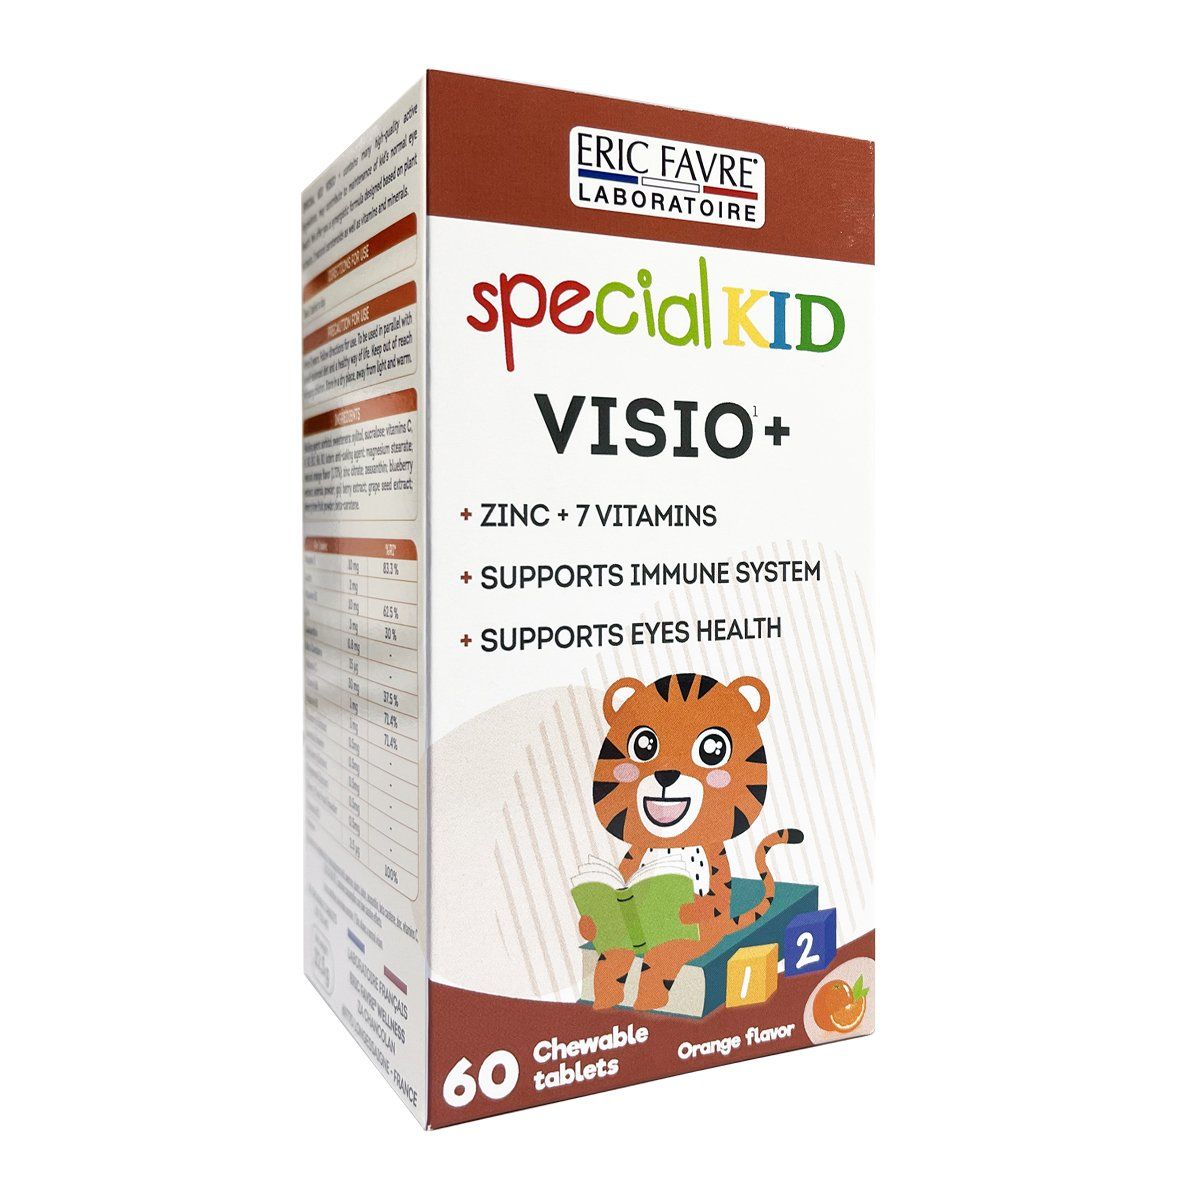  Special Kid Visio+ - Hỗ trợ đôi mắt khỏe mạnh [Hộp 60 viên – Nhập khẩu Pháp] 